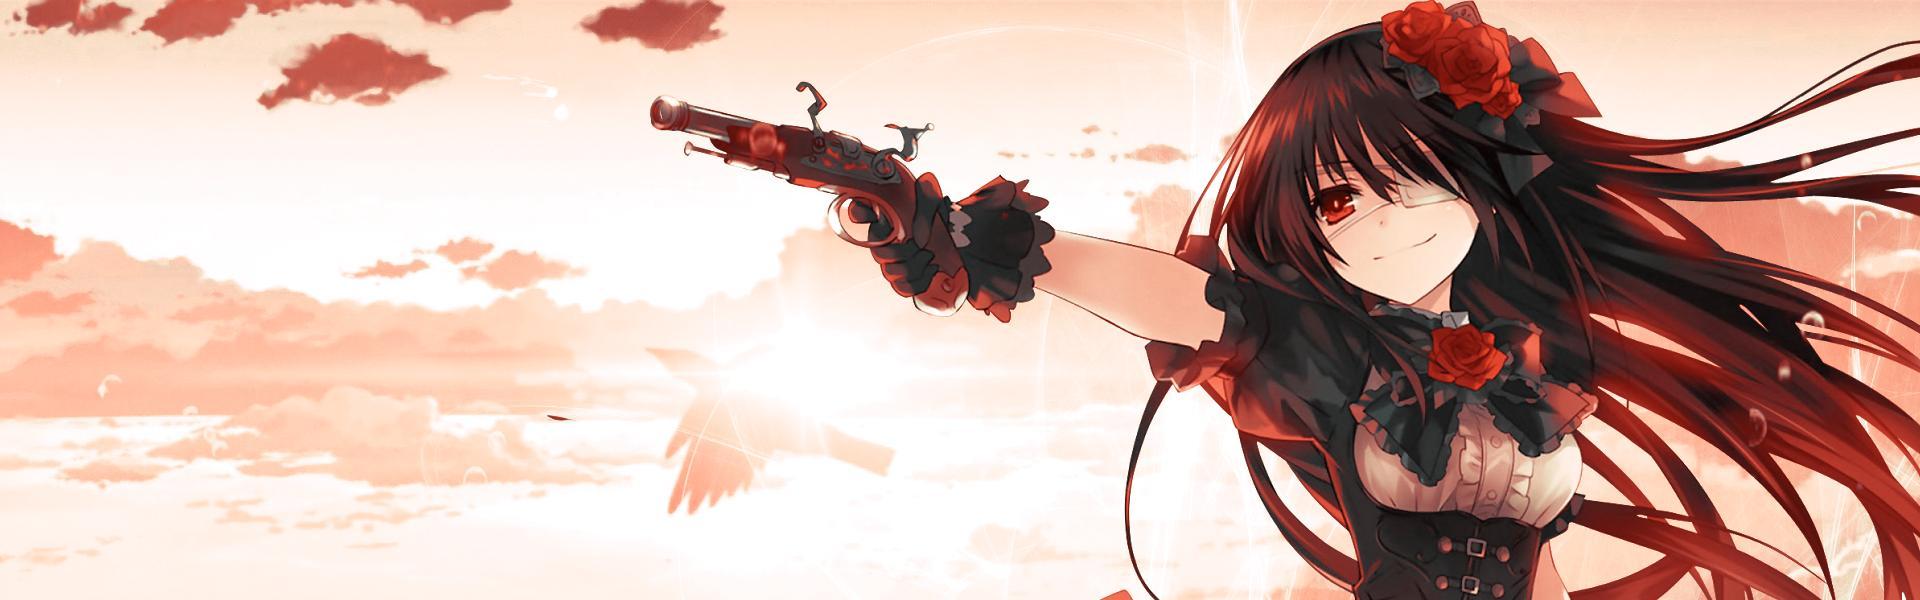 Hình ảnh anime nữ đẹp cầm súng